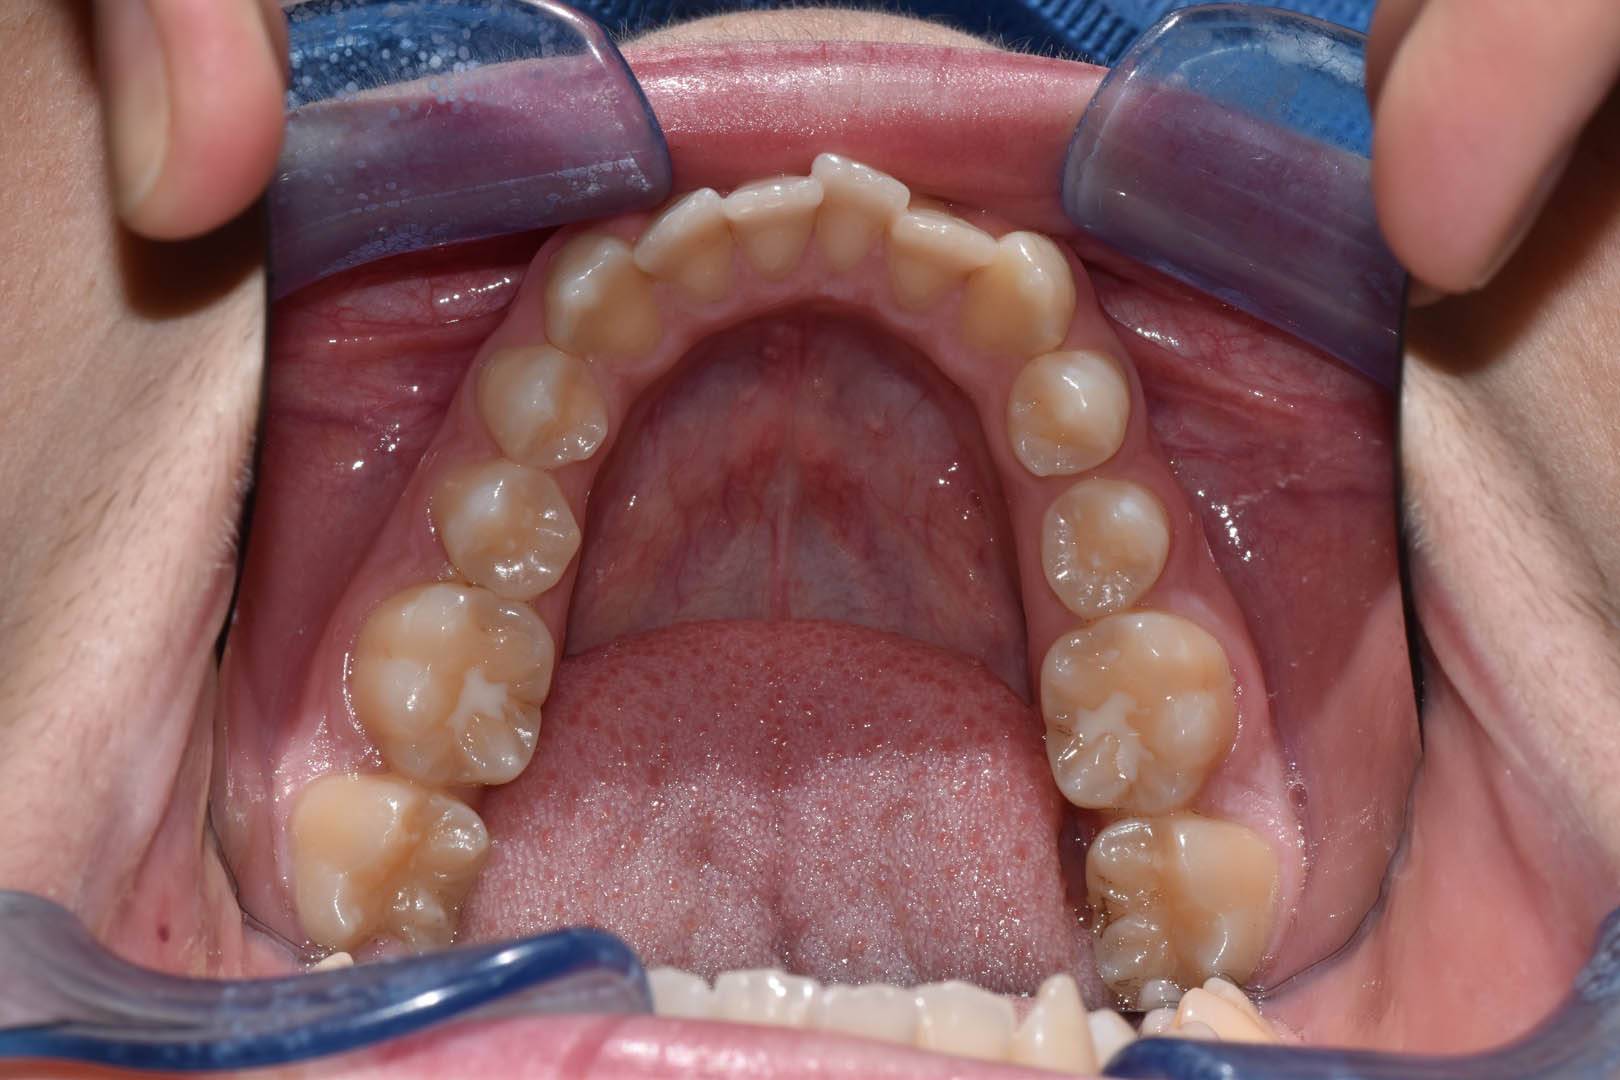 odontocentro-monza-brianza-casi-clinici-ortodonzia-fissa-20-mesi (7)